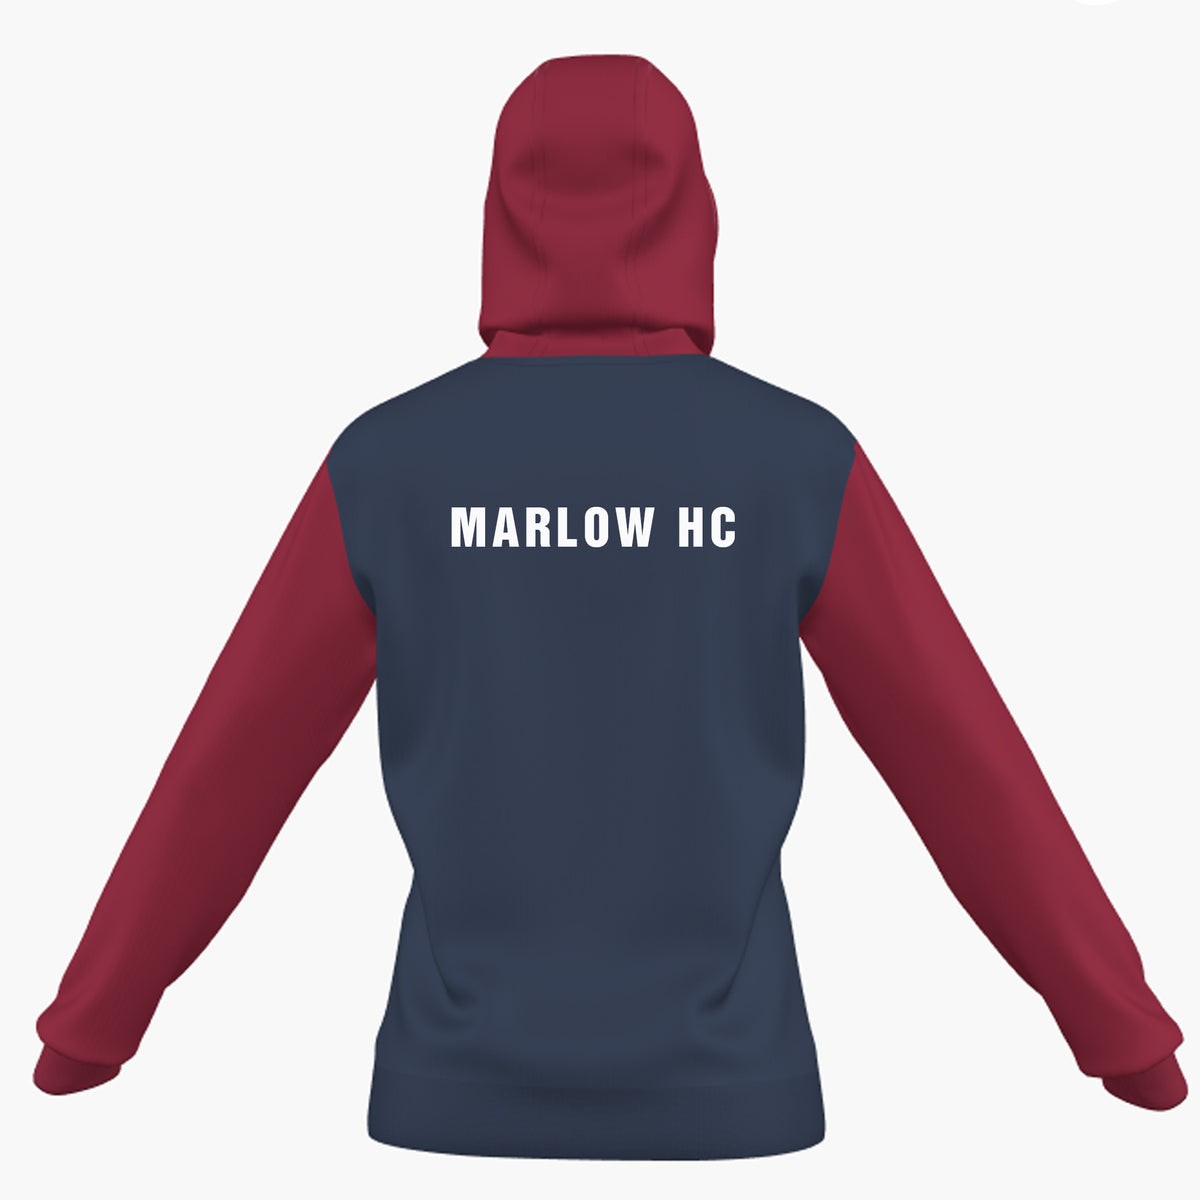 Marlow Hockey Club Women's Hoodie